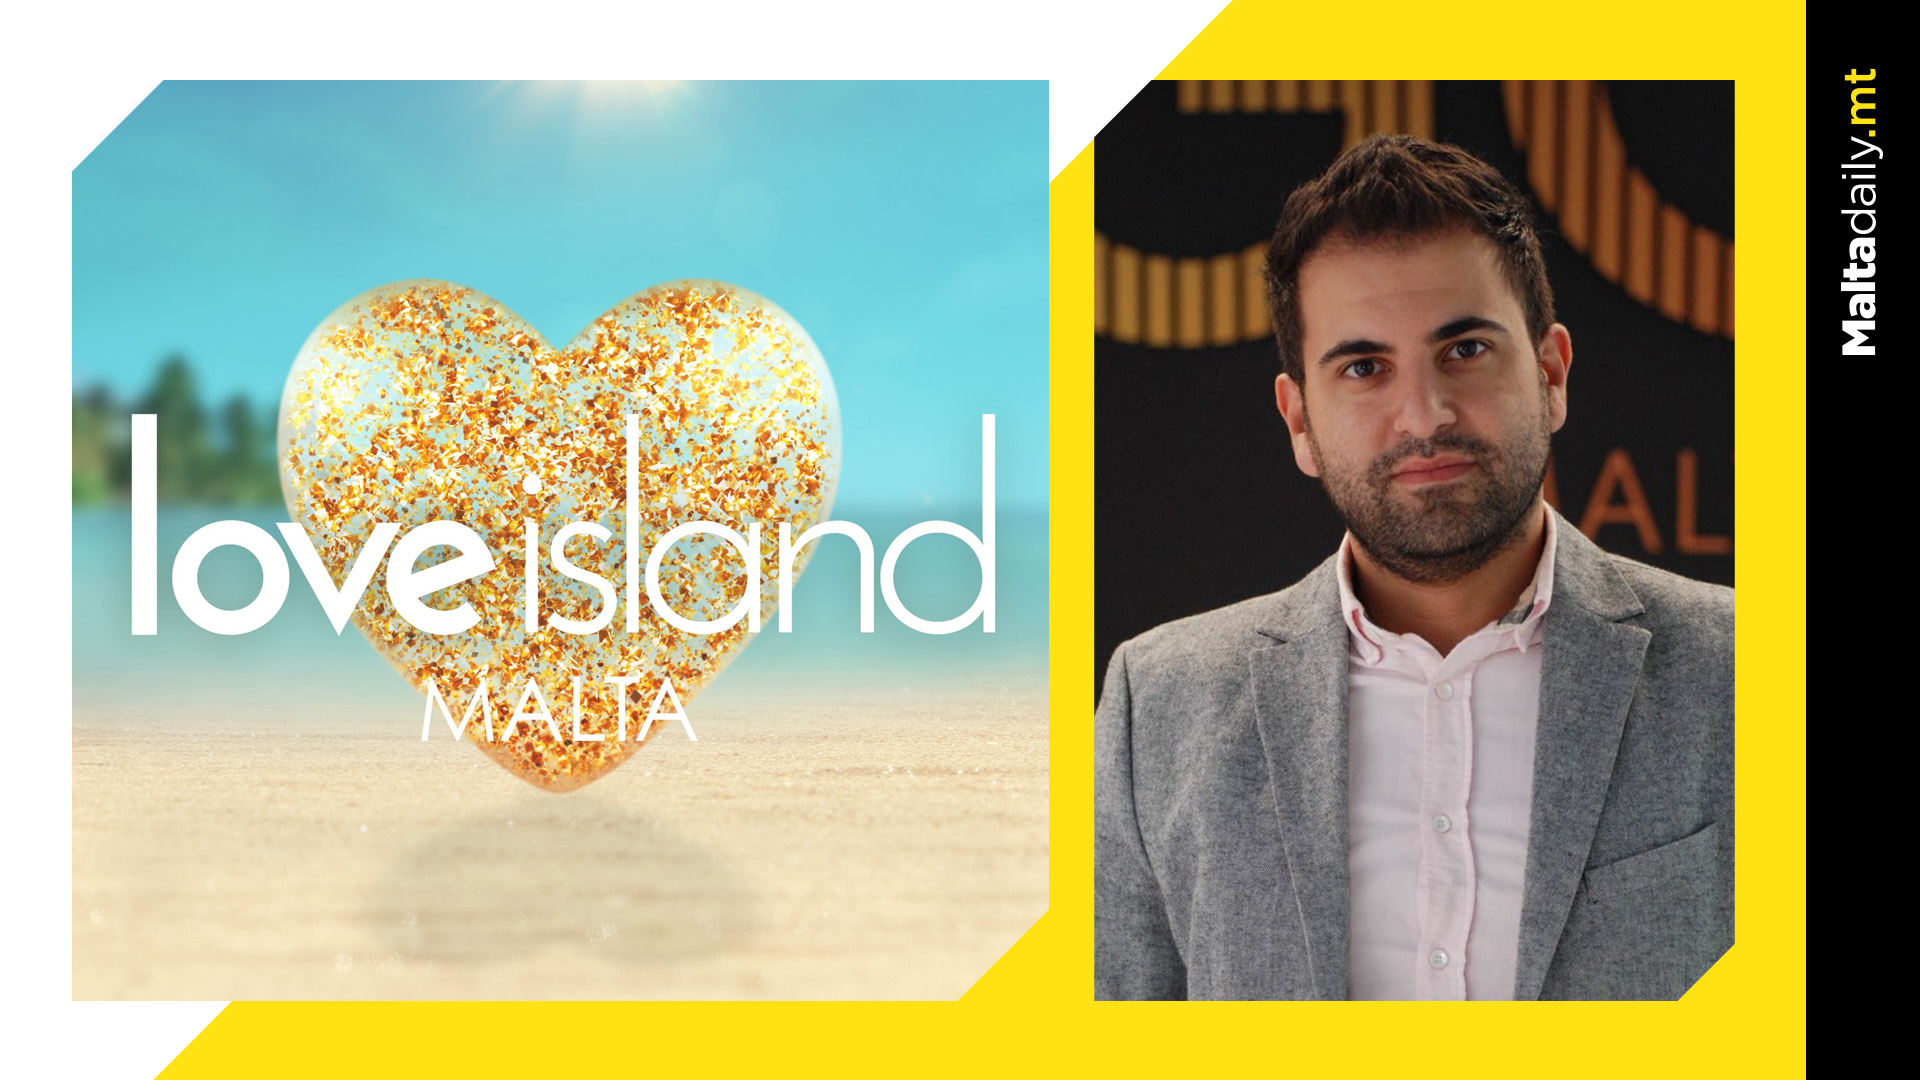 Over 380 people applied for Love Island Malta, showrunner tells TVAM